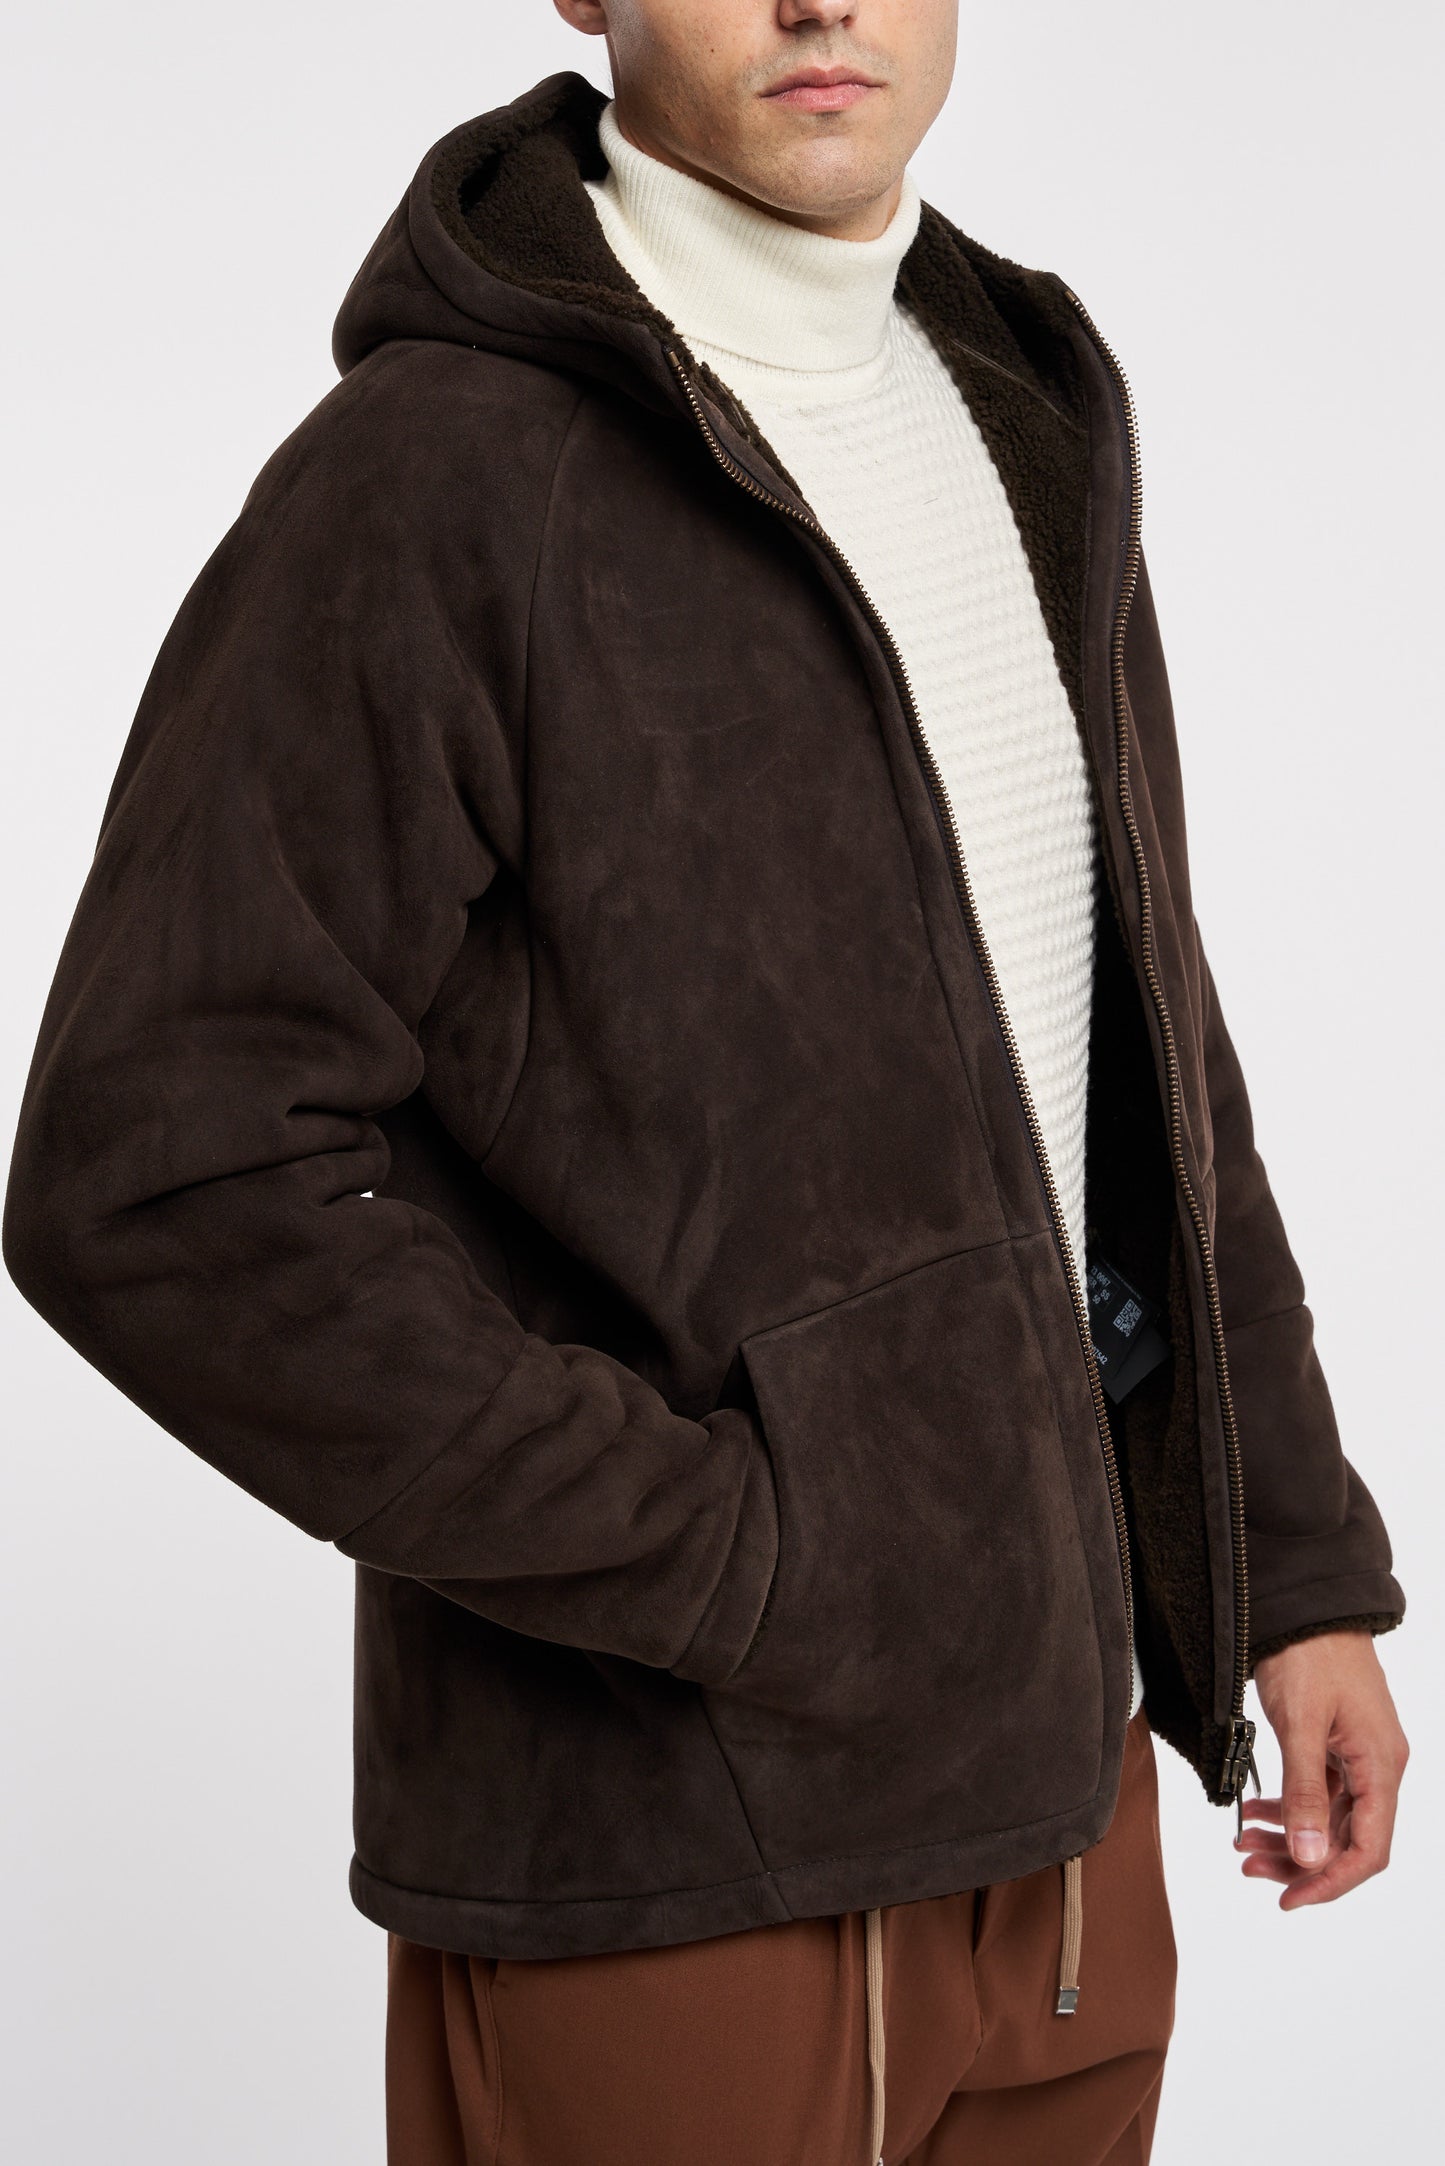  Salvatore Santoro Brown Leather Jacket 100% Lh Marrone Uomo - 3